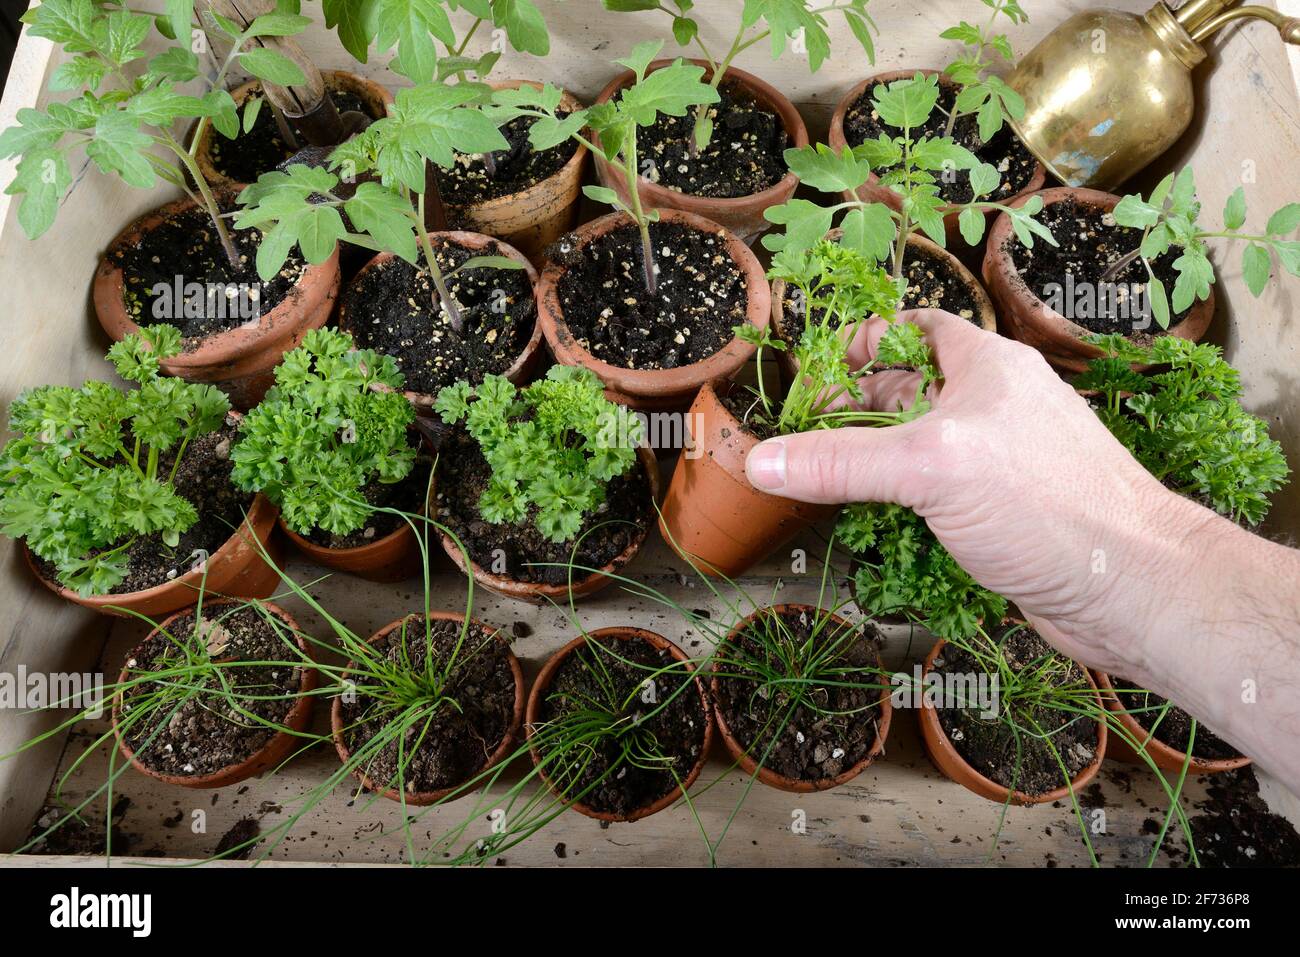 Chive (Allium schoenoprasum), parsley (Petroselinum crispum), tomatoes (Solanum lycopersicum), plant cultivation Stock Photo